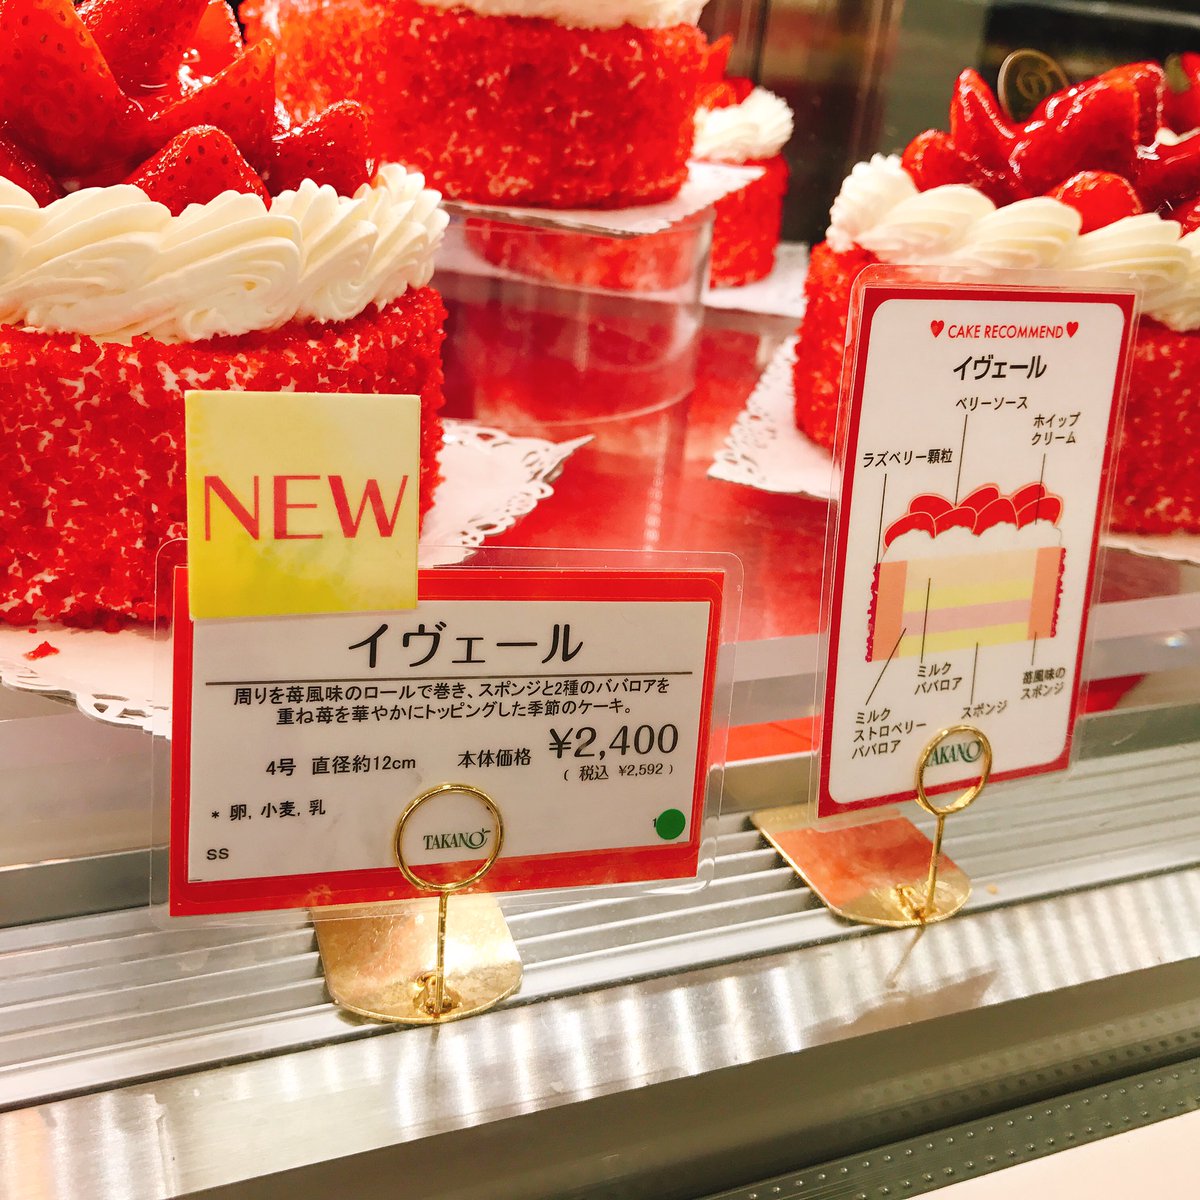 京都 いいねありがとうございます على تويتر 前にそごう千葉店 ジュンヌ 館でやってた スイーツフェス 写真投稿キャンペーンで見事 新宿高野のケーキをゲット 先週貰って来たよ 何にしようか悩んだ結果いちごのケーキに ラズベリーの酸味といちごの甘